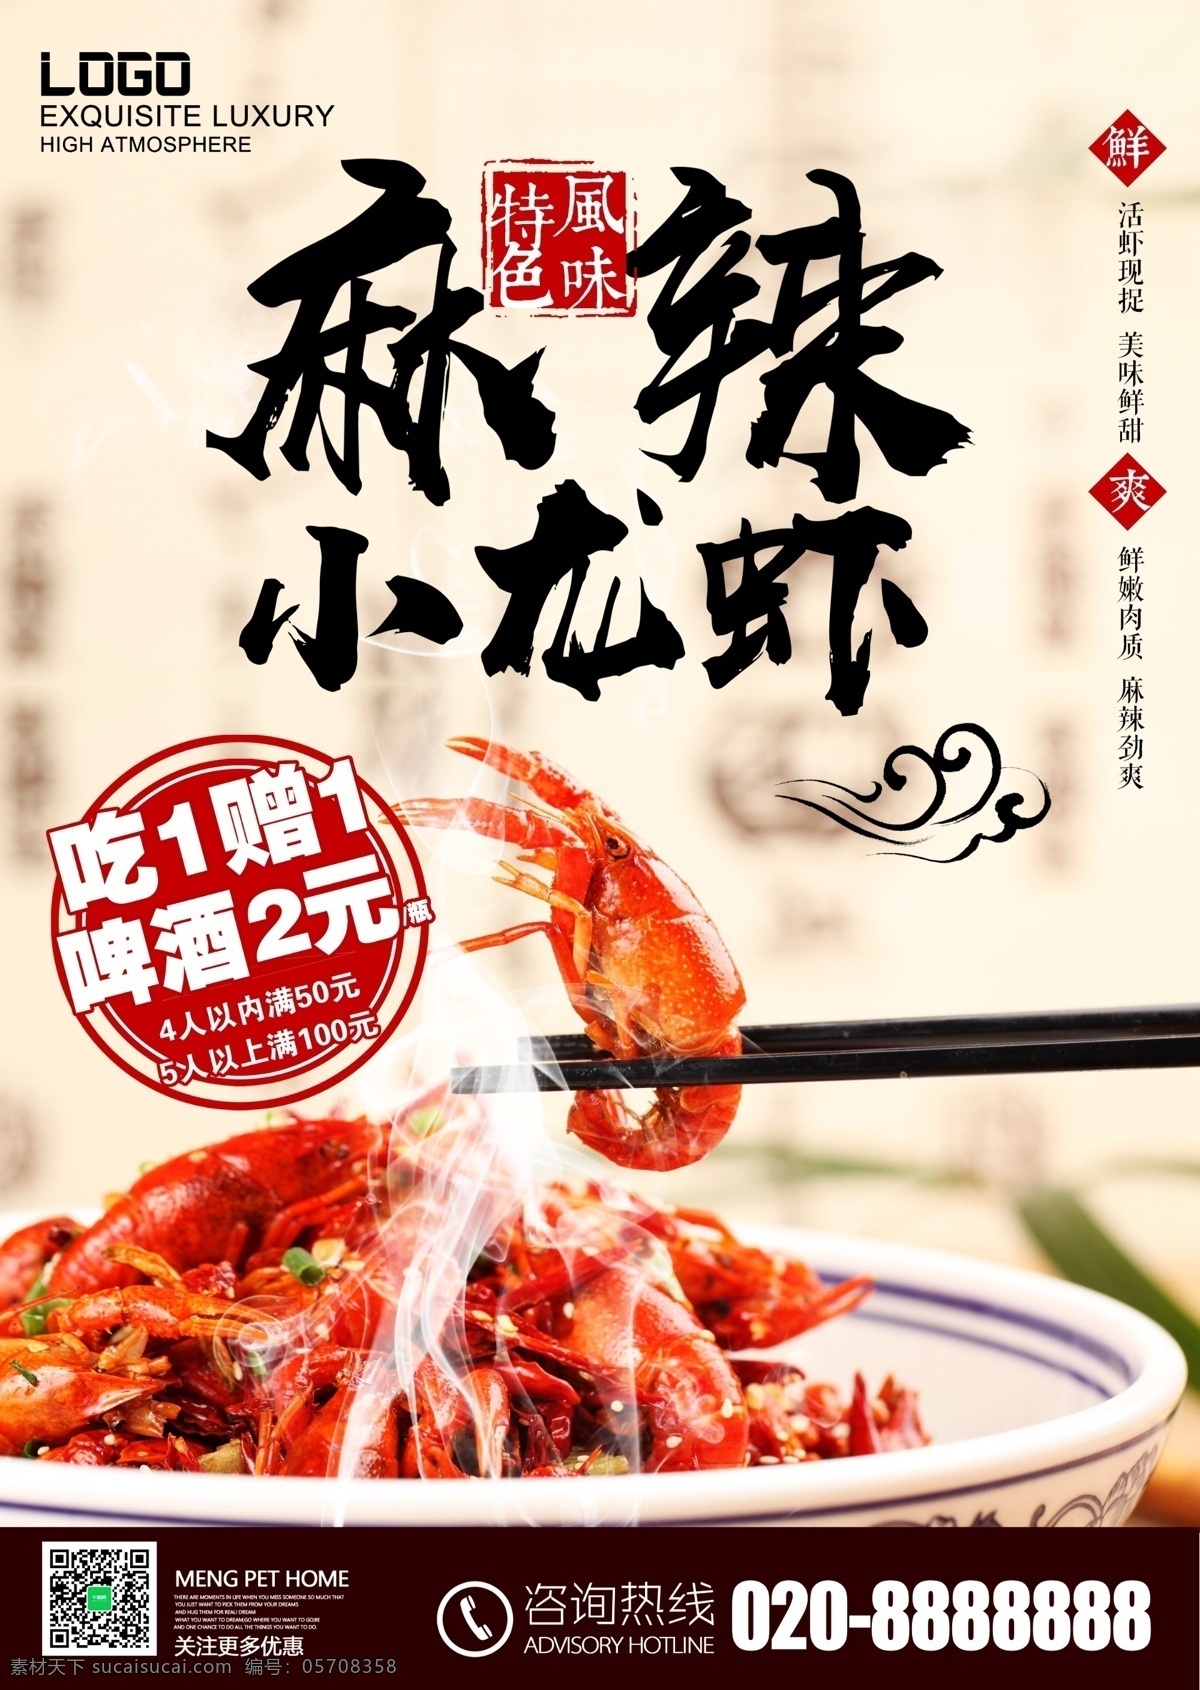 夏季 美食 麻辣 小 龙虾 食品 菜单 小龙虾 大排档 促销 活动海报 模板下载